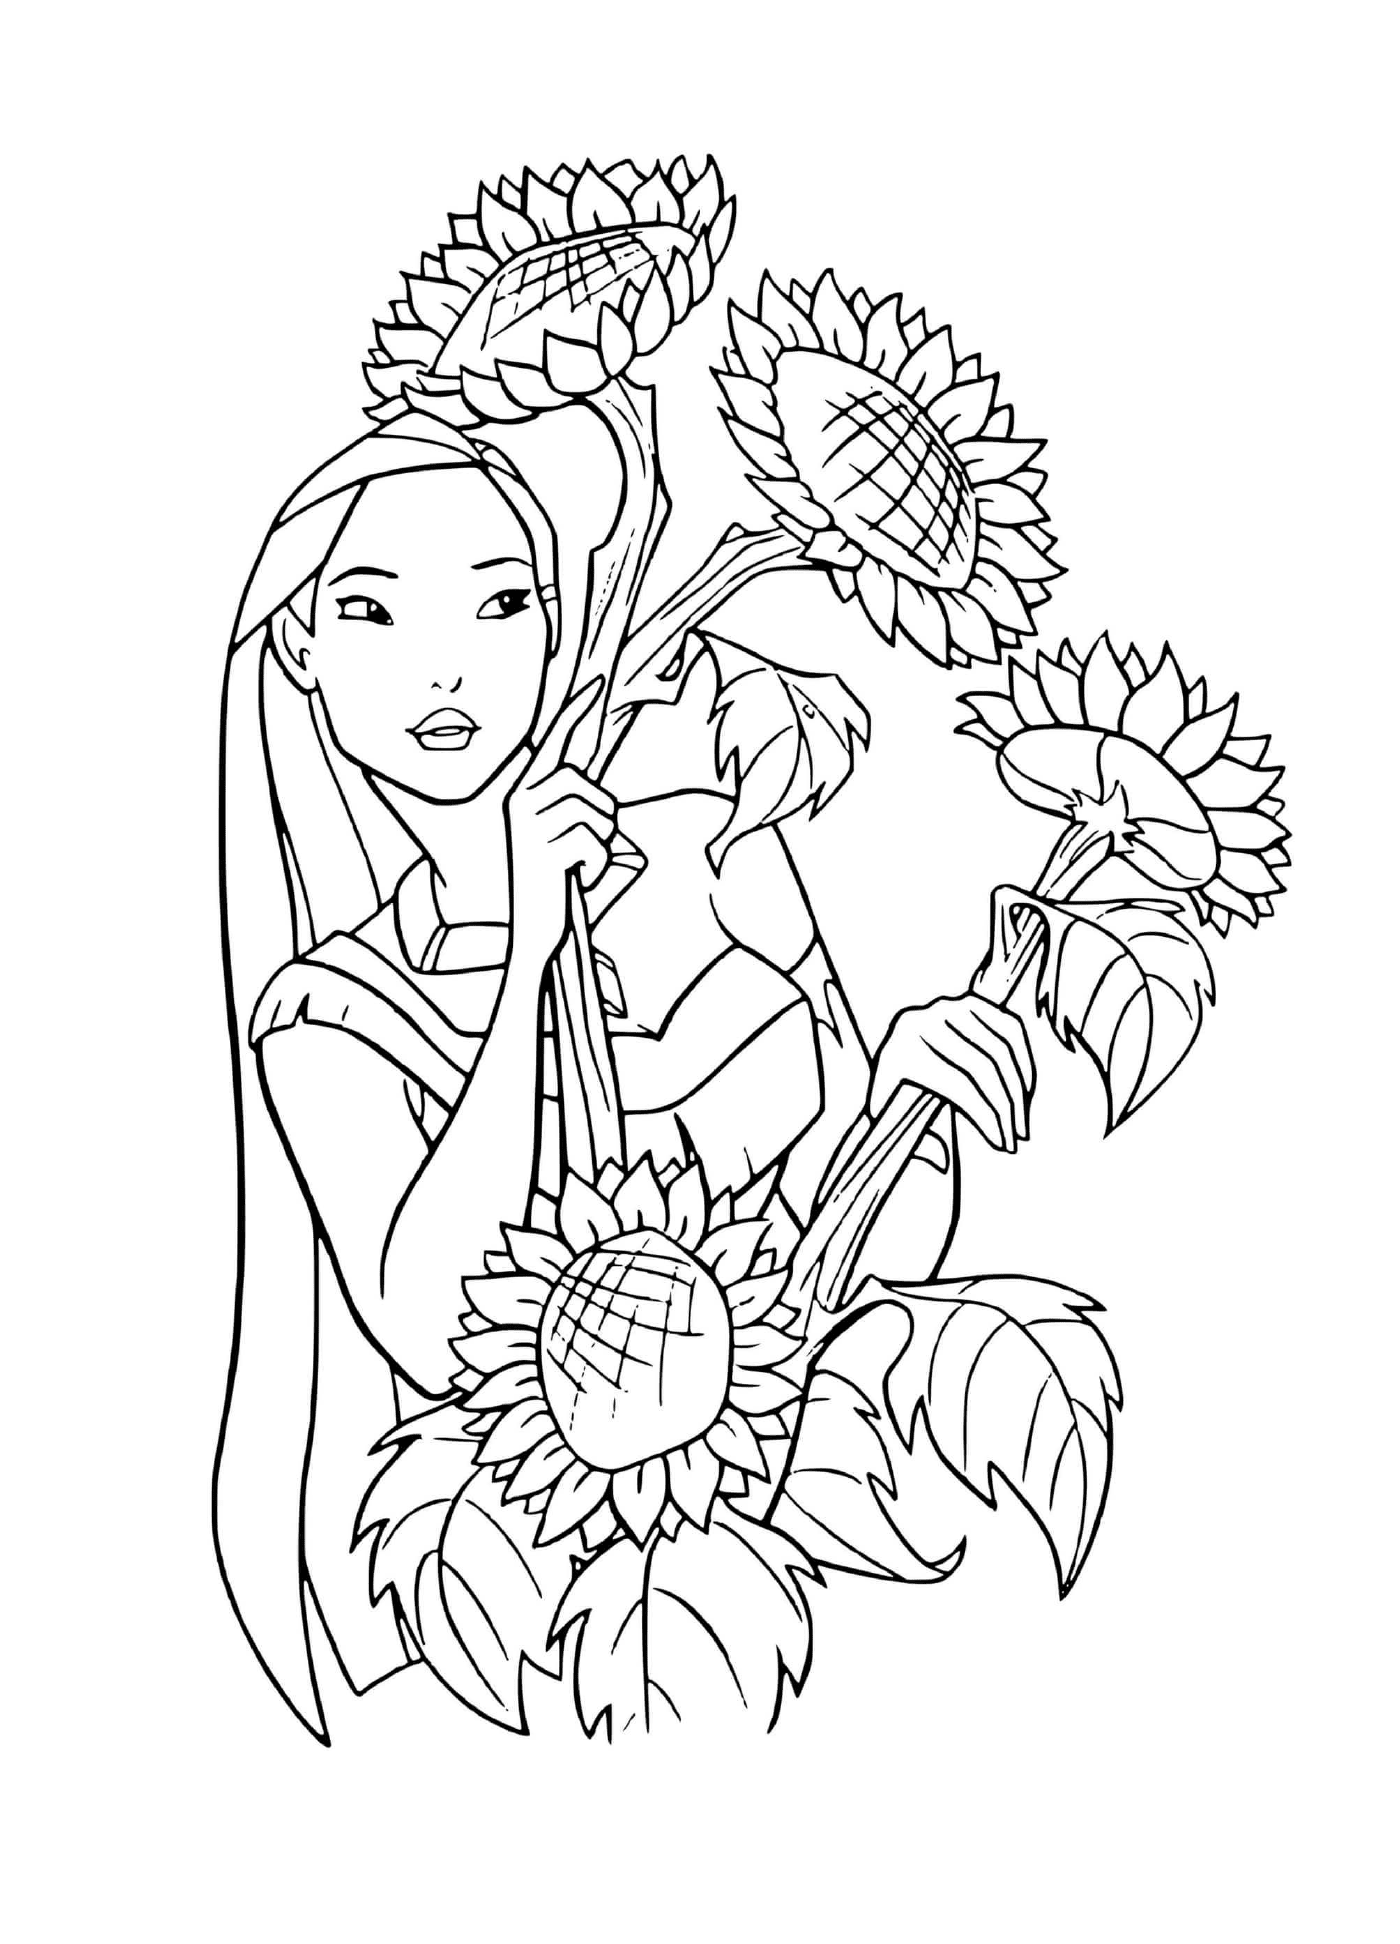 Pocahontas adire les fleurs